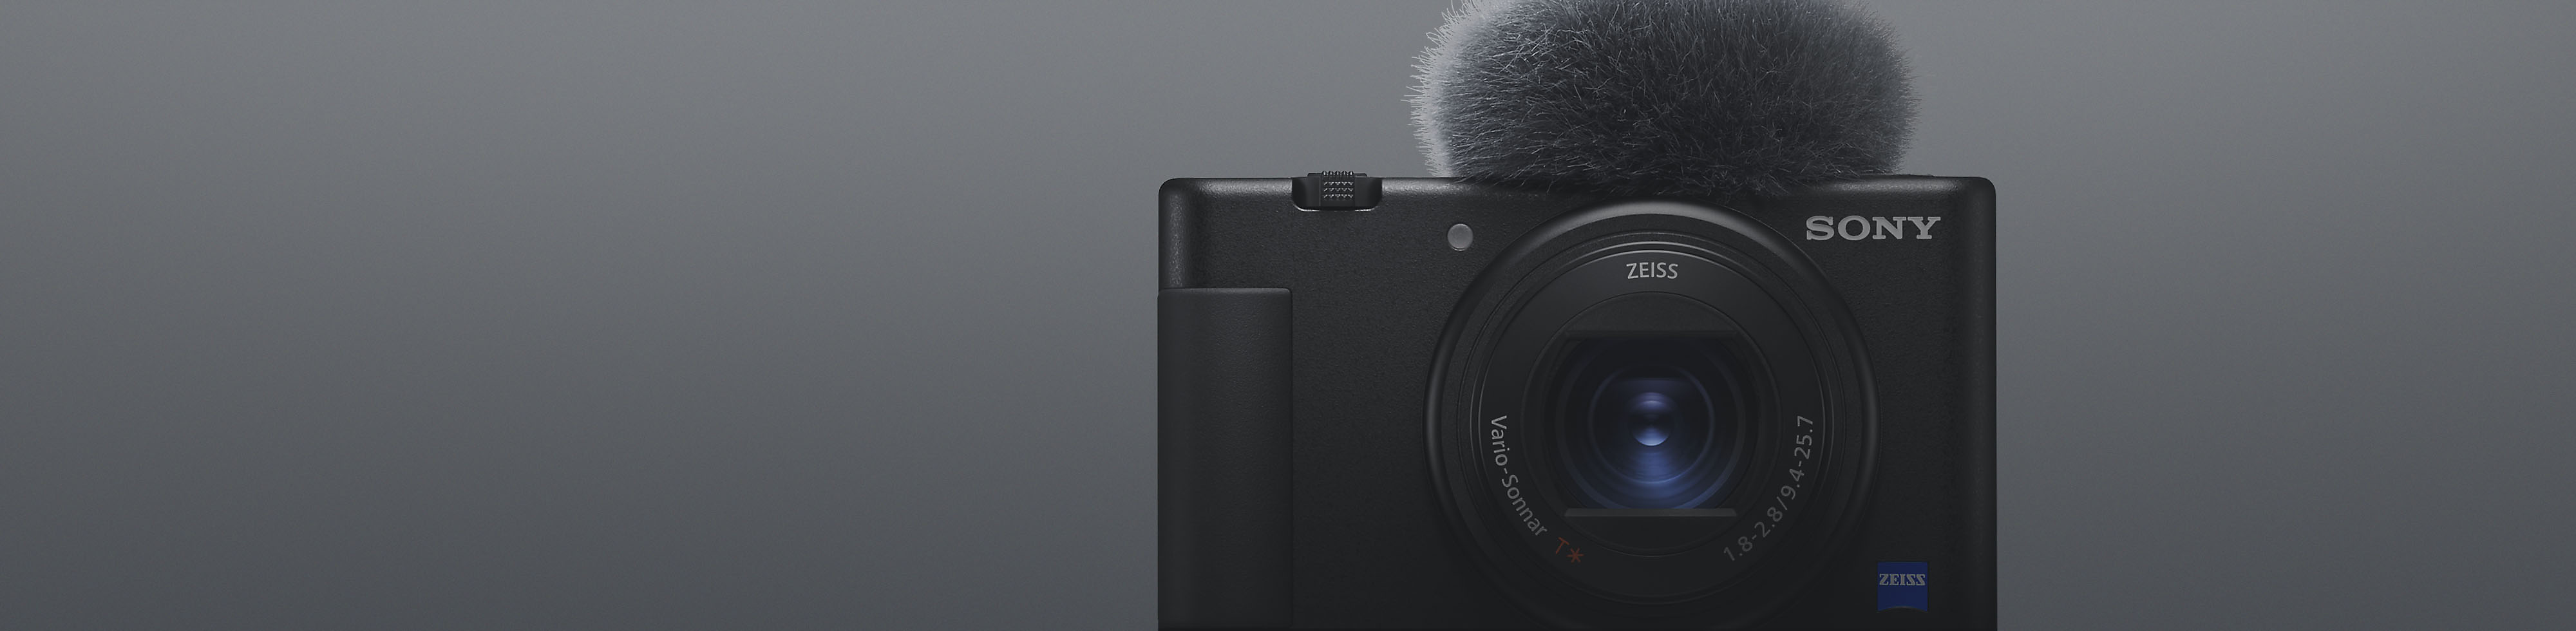 Svart kompakt kamera fra Sony med mikrofon montert, sett forfra